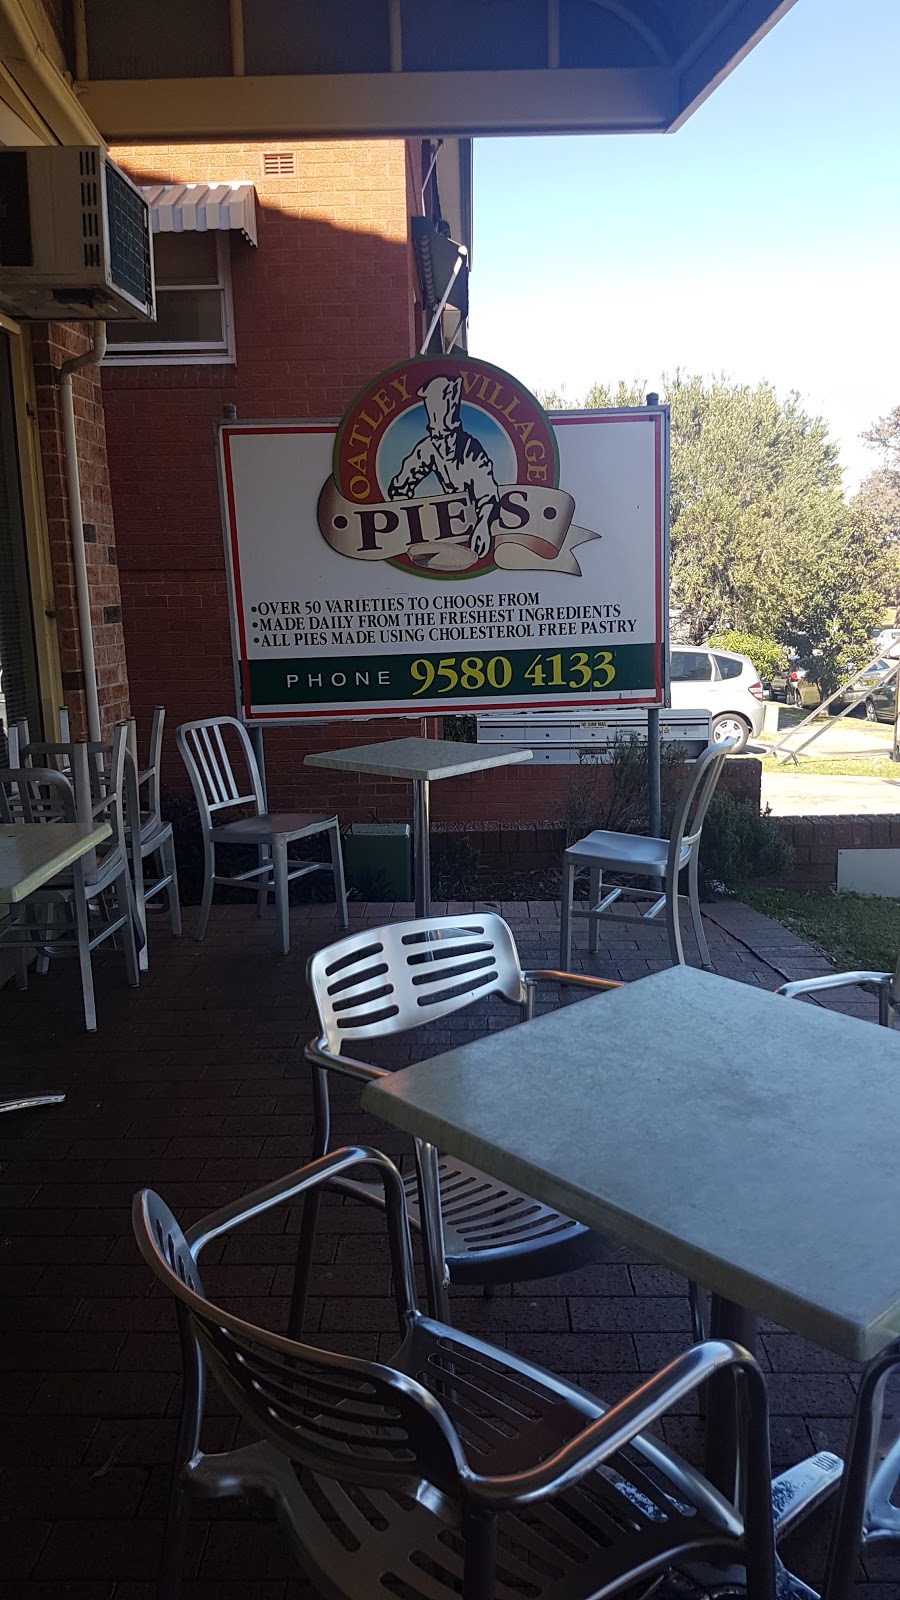 Oatley Village Pie Shop | 34 Oatley Ave, Oatley NSW 2223, Australia | Phone: (02) 9580 4133